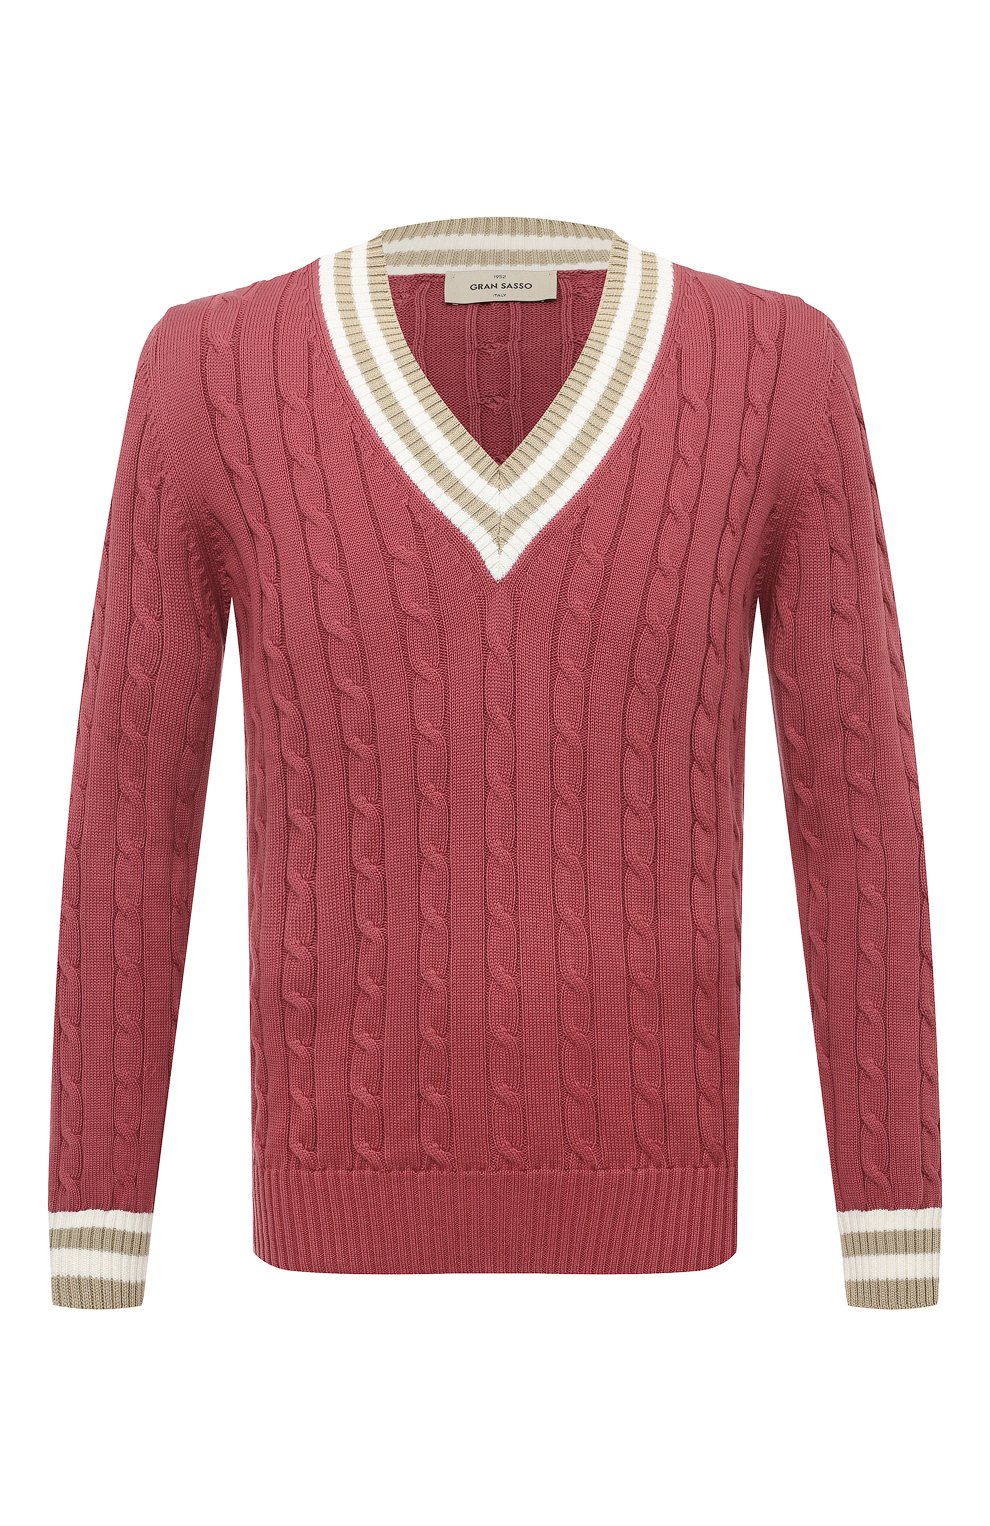 Хлопковый пуловер Gran Sasso Розовый 23138/18019 5706030